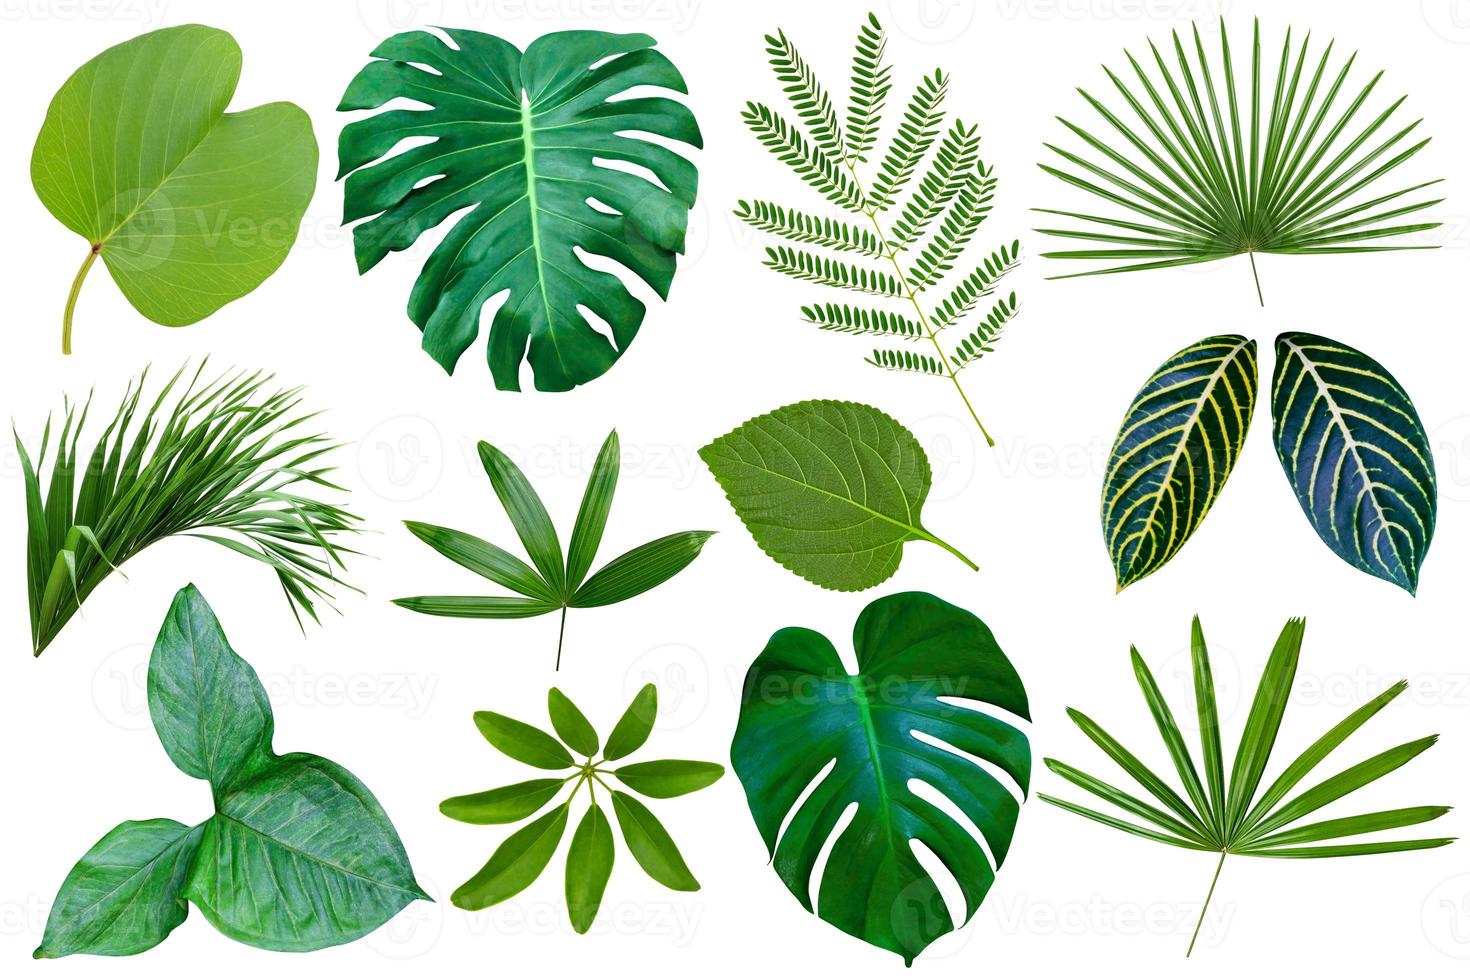 collectie verschillende van groene bladeren patroon voor natuur concept, set van tropisch blad geïsoleerd op een witte achtergrond foto